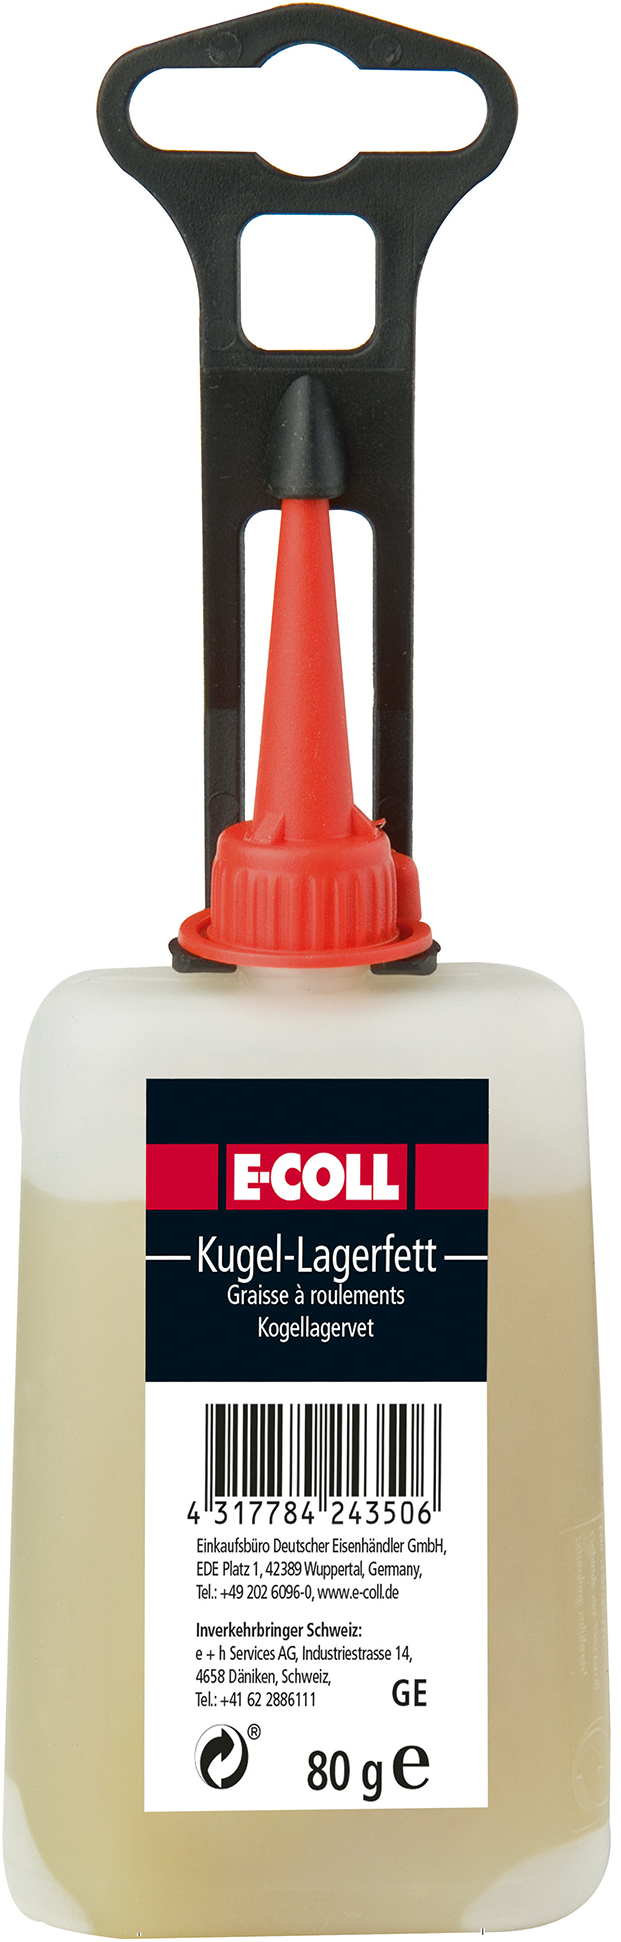 Image de Kugellagerfett 80g Flasche E-COLL